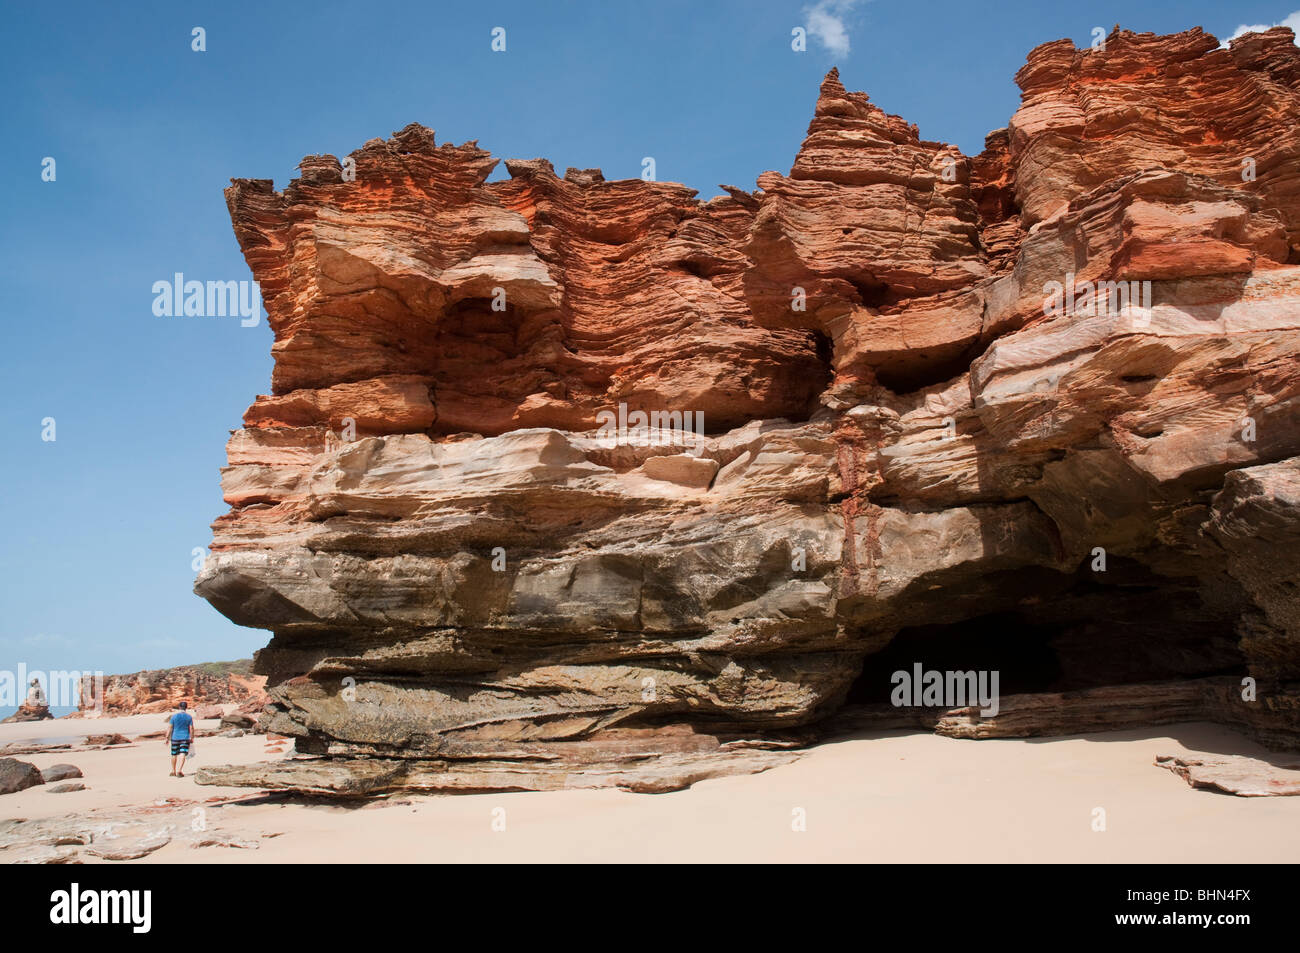 Falaises rouges accidentées et formations rocheuses de grès à Echo Beach sur la côte ouest de l'Australie près de Broome Banque D'Images